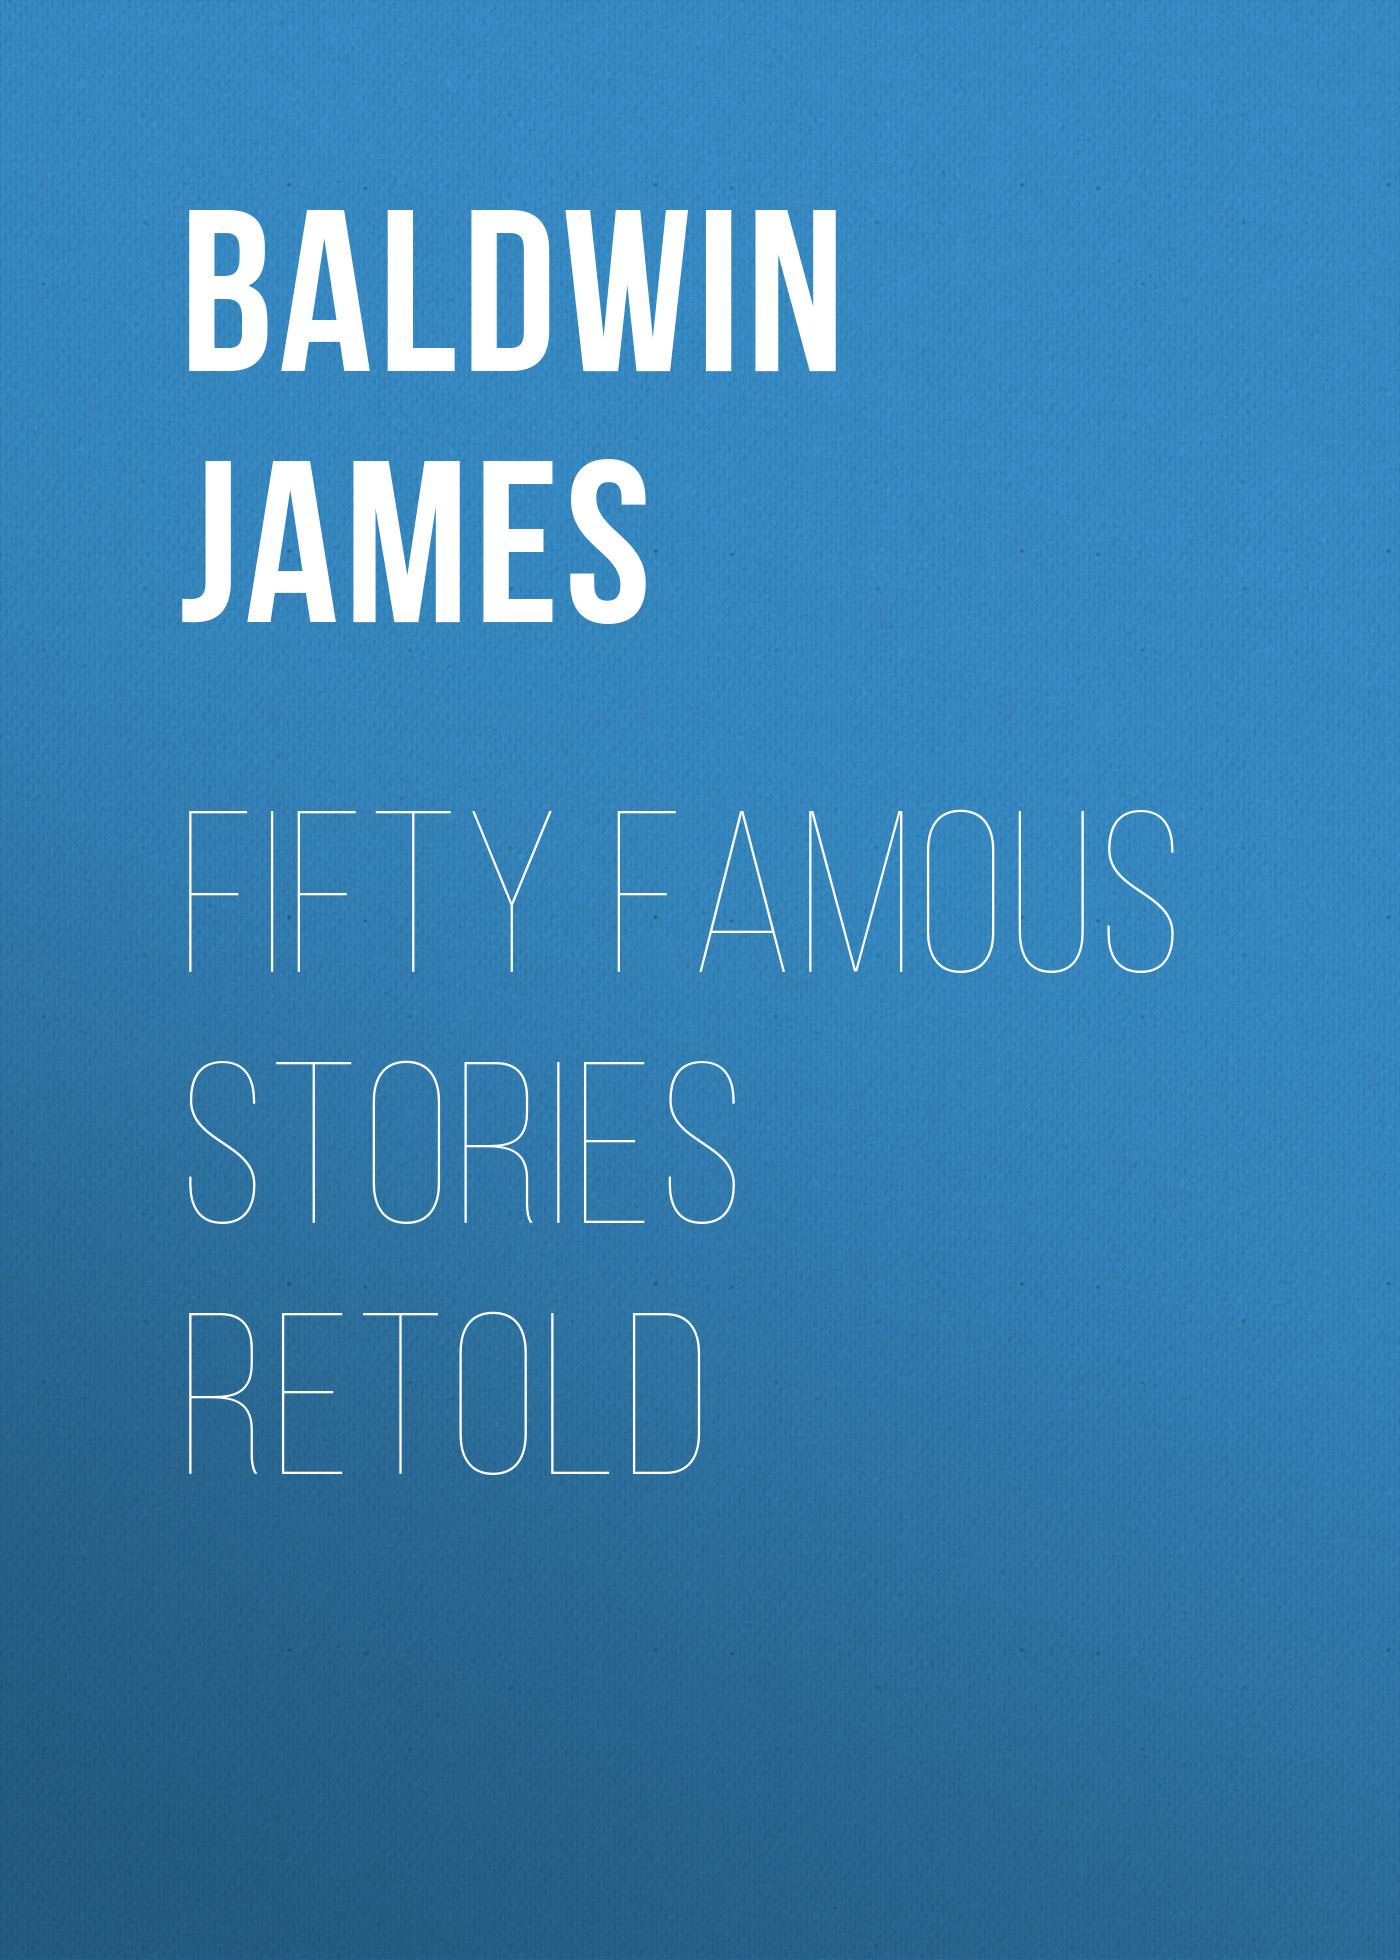 Книга Fifty Famous Stories Retold из серии , созданная James Baldwin, может относится к жанру Зарубежные детские книги, Старинная литература: прочее, Зарубежная старинная литература, Зарубежная классика. Стоимость электронной книги Fifty Famous Stories Retold с идентификатором 34840678 составляет 0 руб.